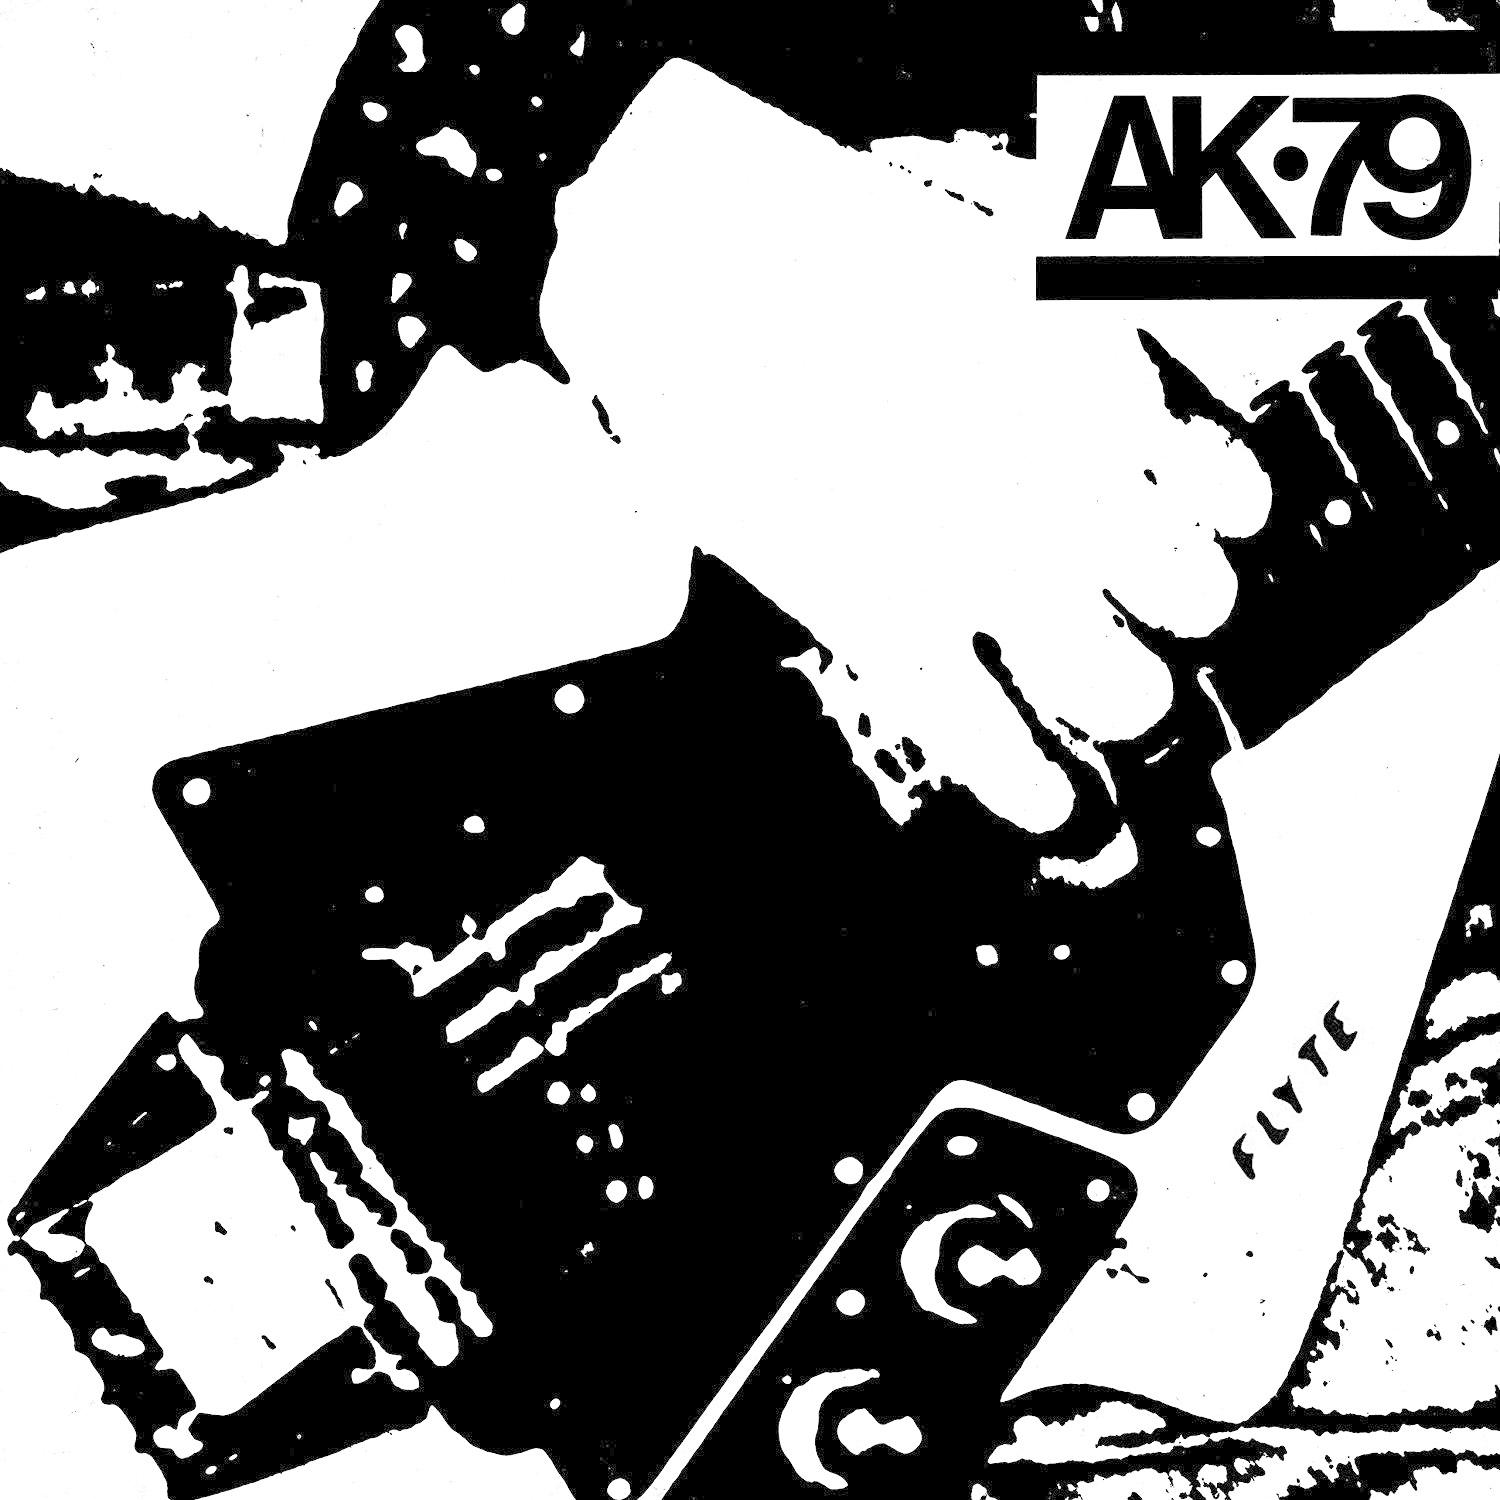 VARIOUS (Vinyl) - - Ak79